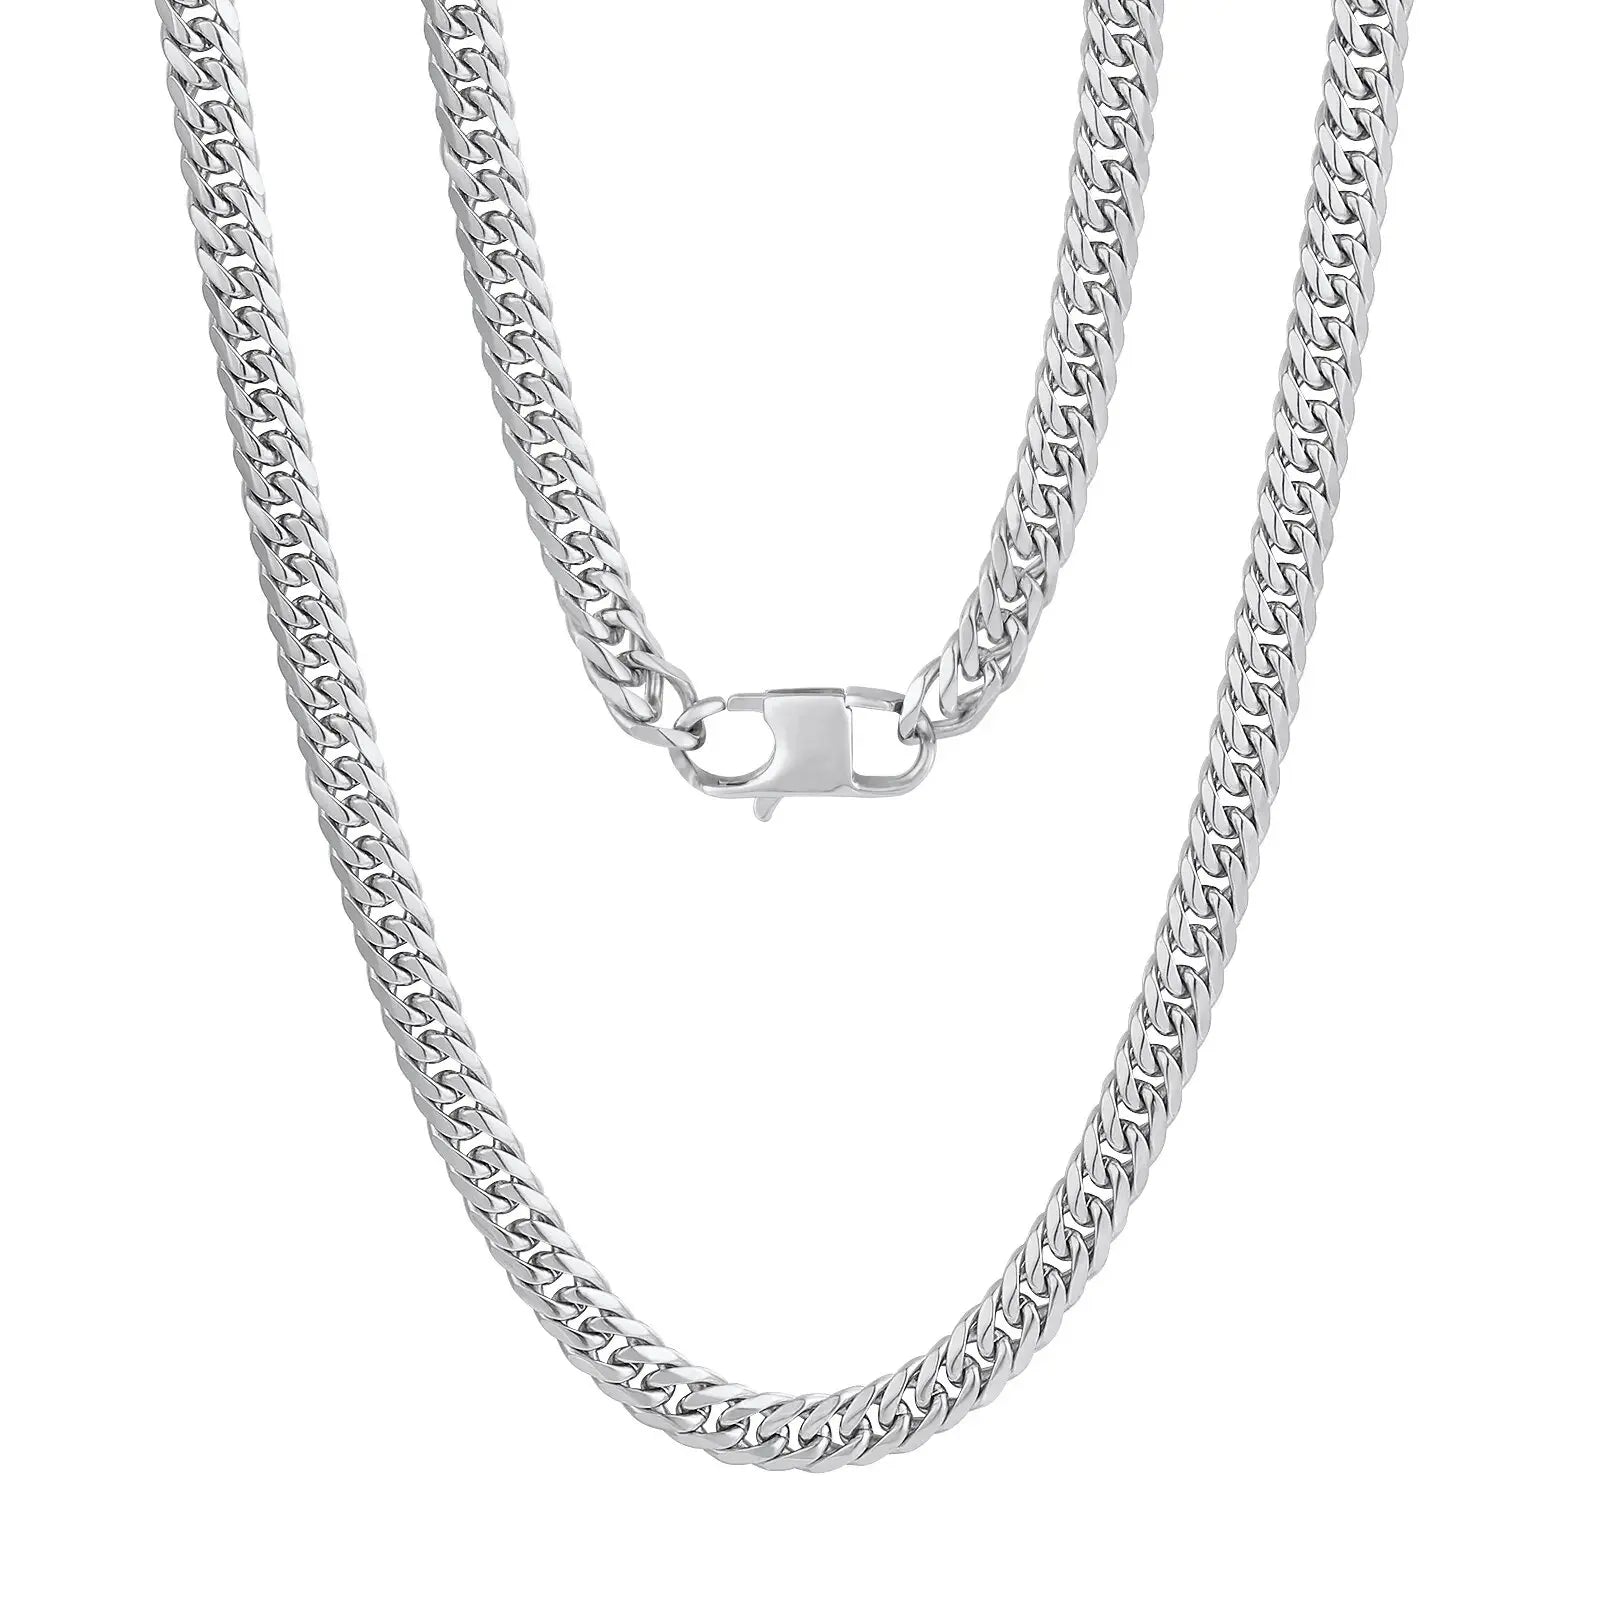 Double Flat Curb Chain Necklace/Bracelet - 7mm